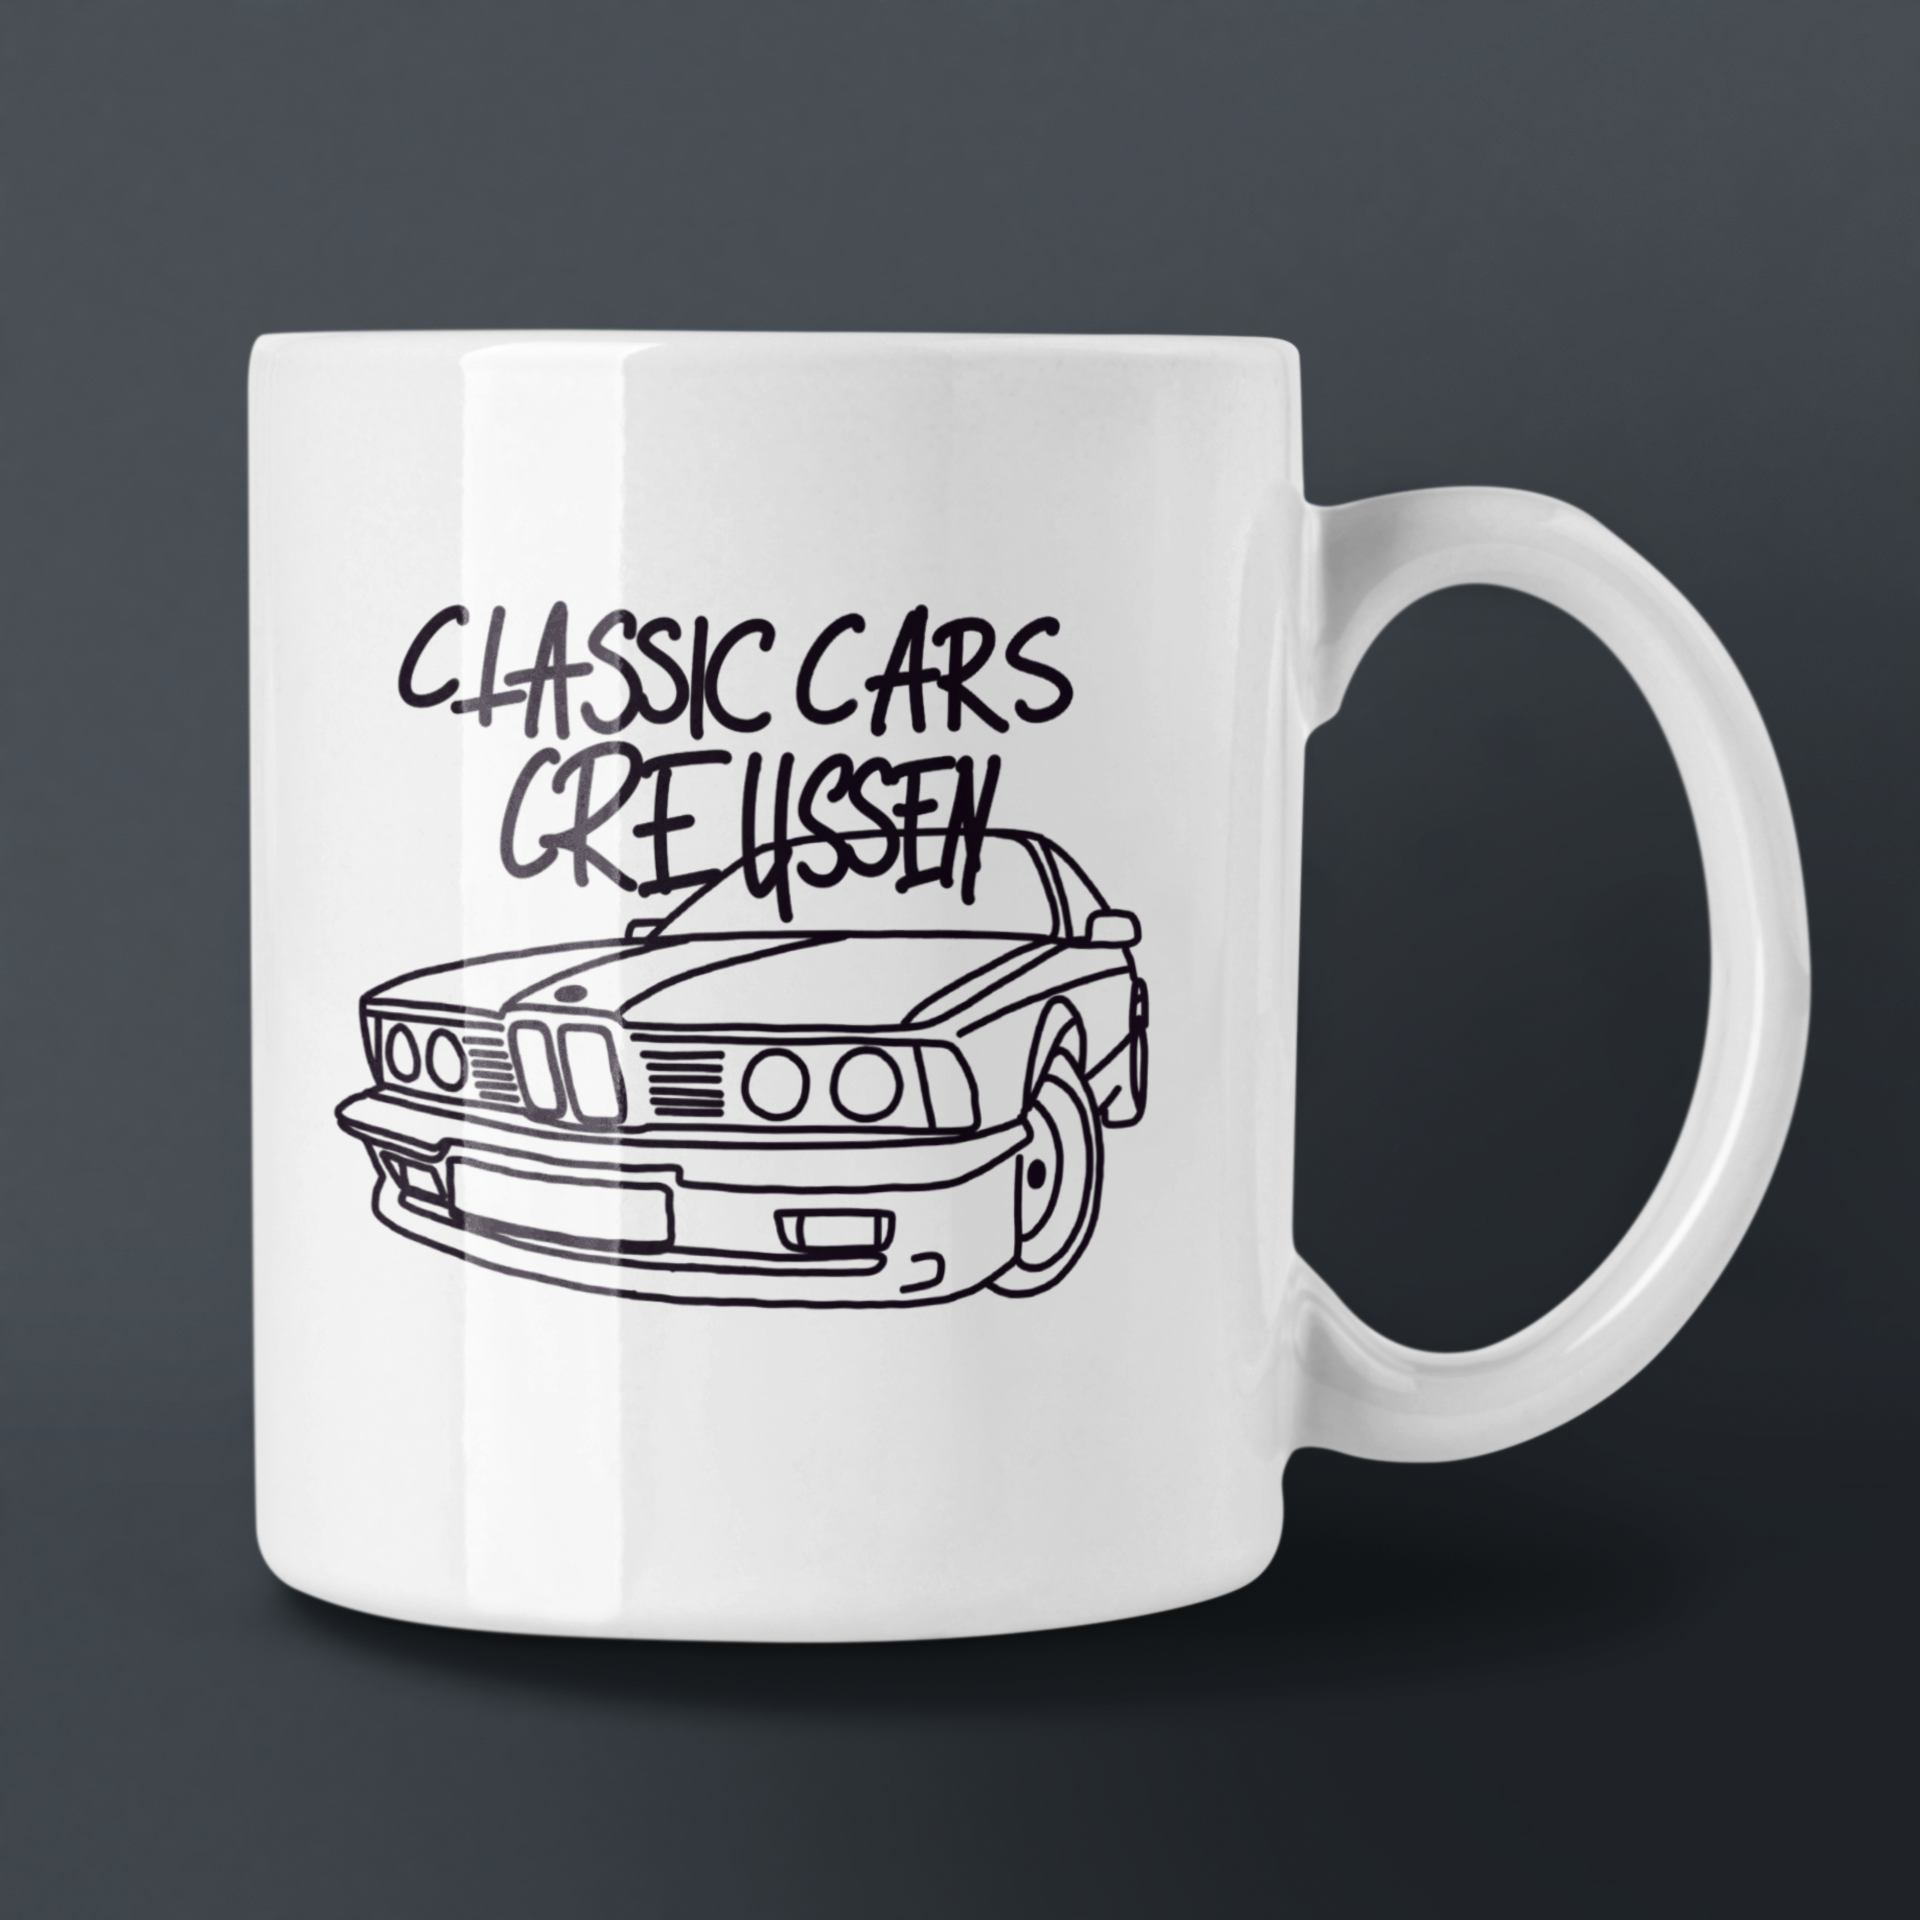 Tasse "Classic Cars Creussen"